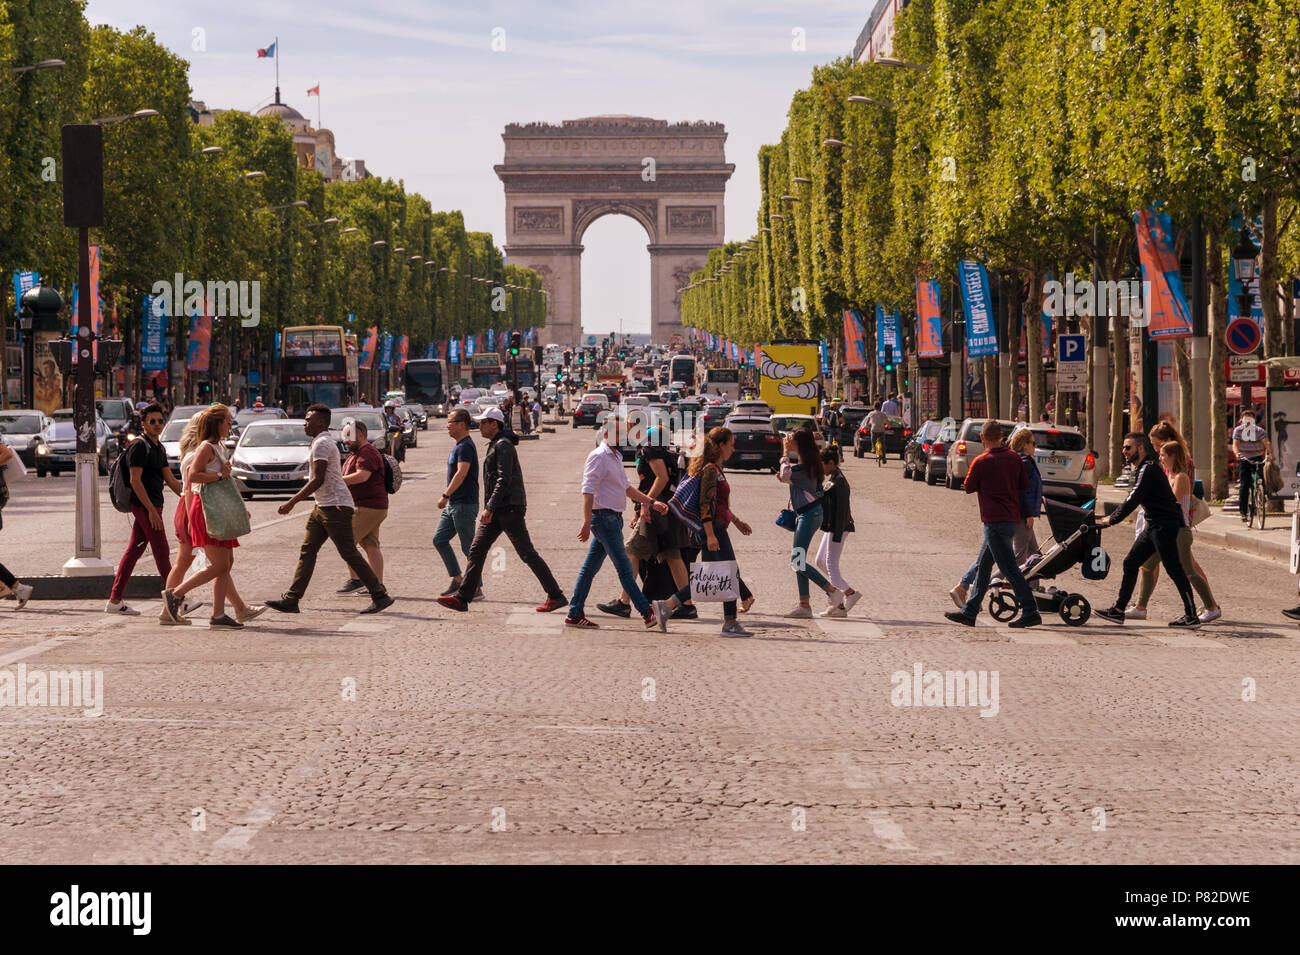 Parigi, Francia - 23 Giugno 2018: una folla di persone che attraversano Avenue des Champs Elysees con Arc de Triomphe in background Foto Stock